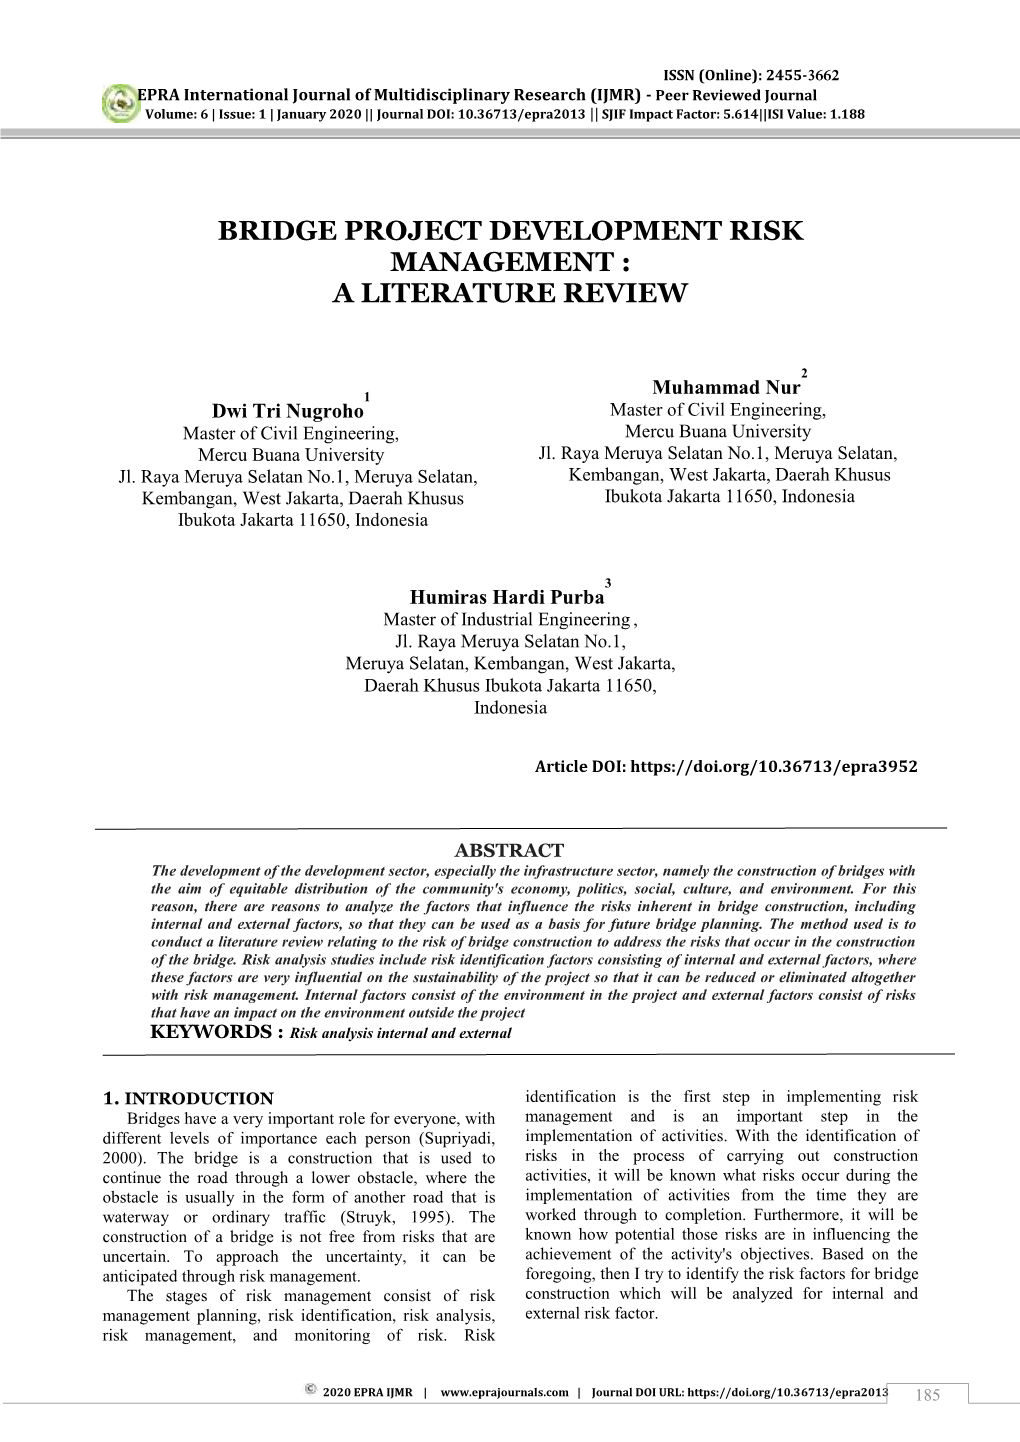 Bridge Project Development Risk Management : a Literature Review